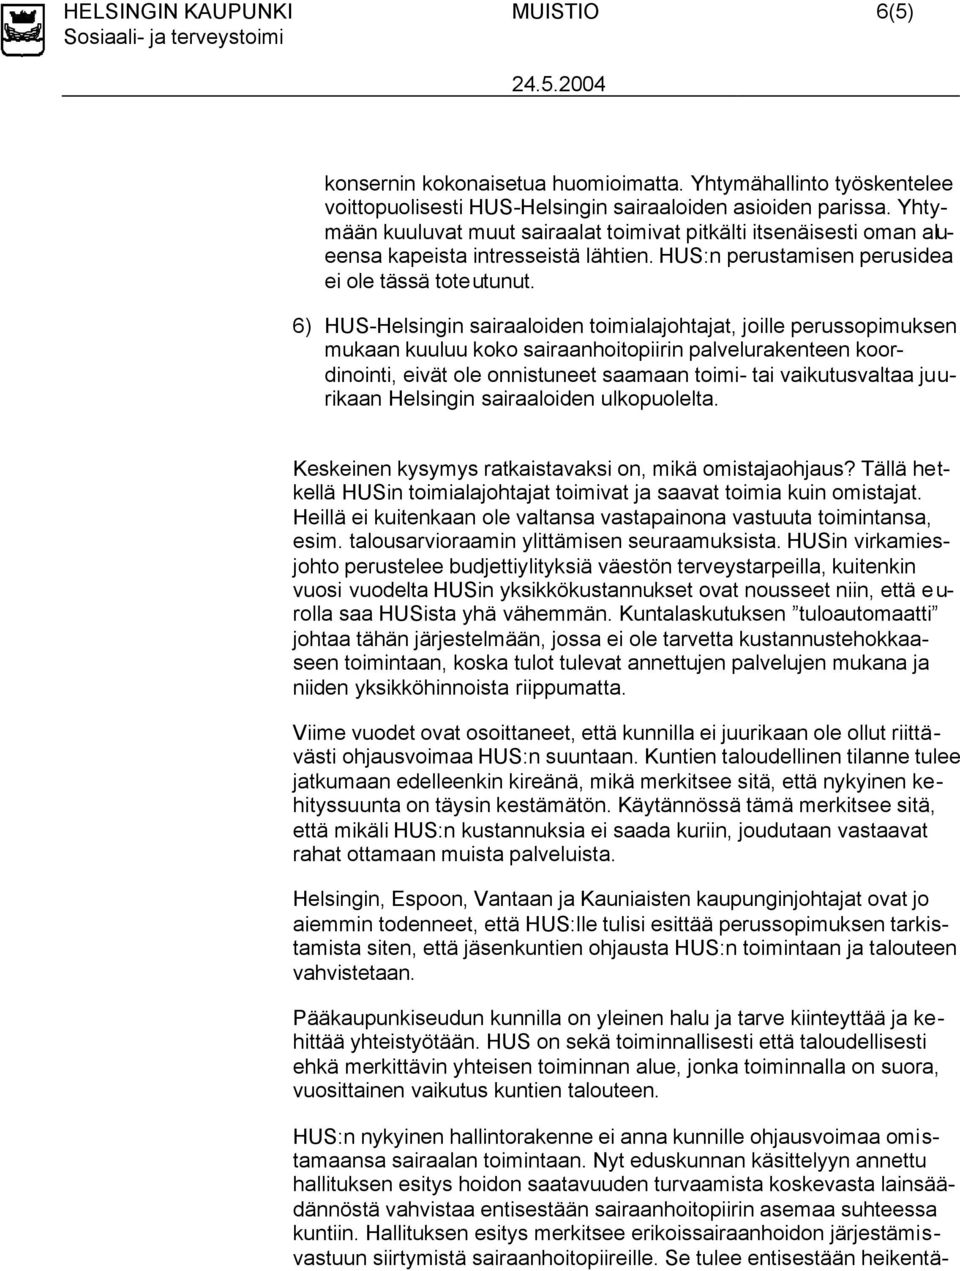 6) HUS-Helsingin sairaaloiden toimialajohtajat, joille perussopimuksen mukaan kuuluu koko sairaanhoitopiirin palvelurakenteen koordinointi, eivät ole onnistuneet saamaan toimi- tai vaikutusvaltaa